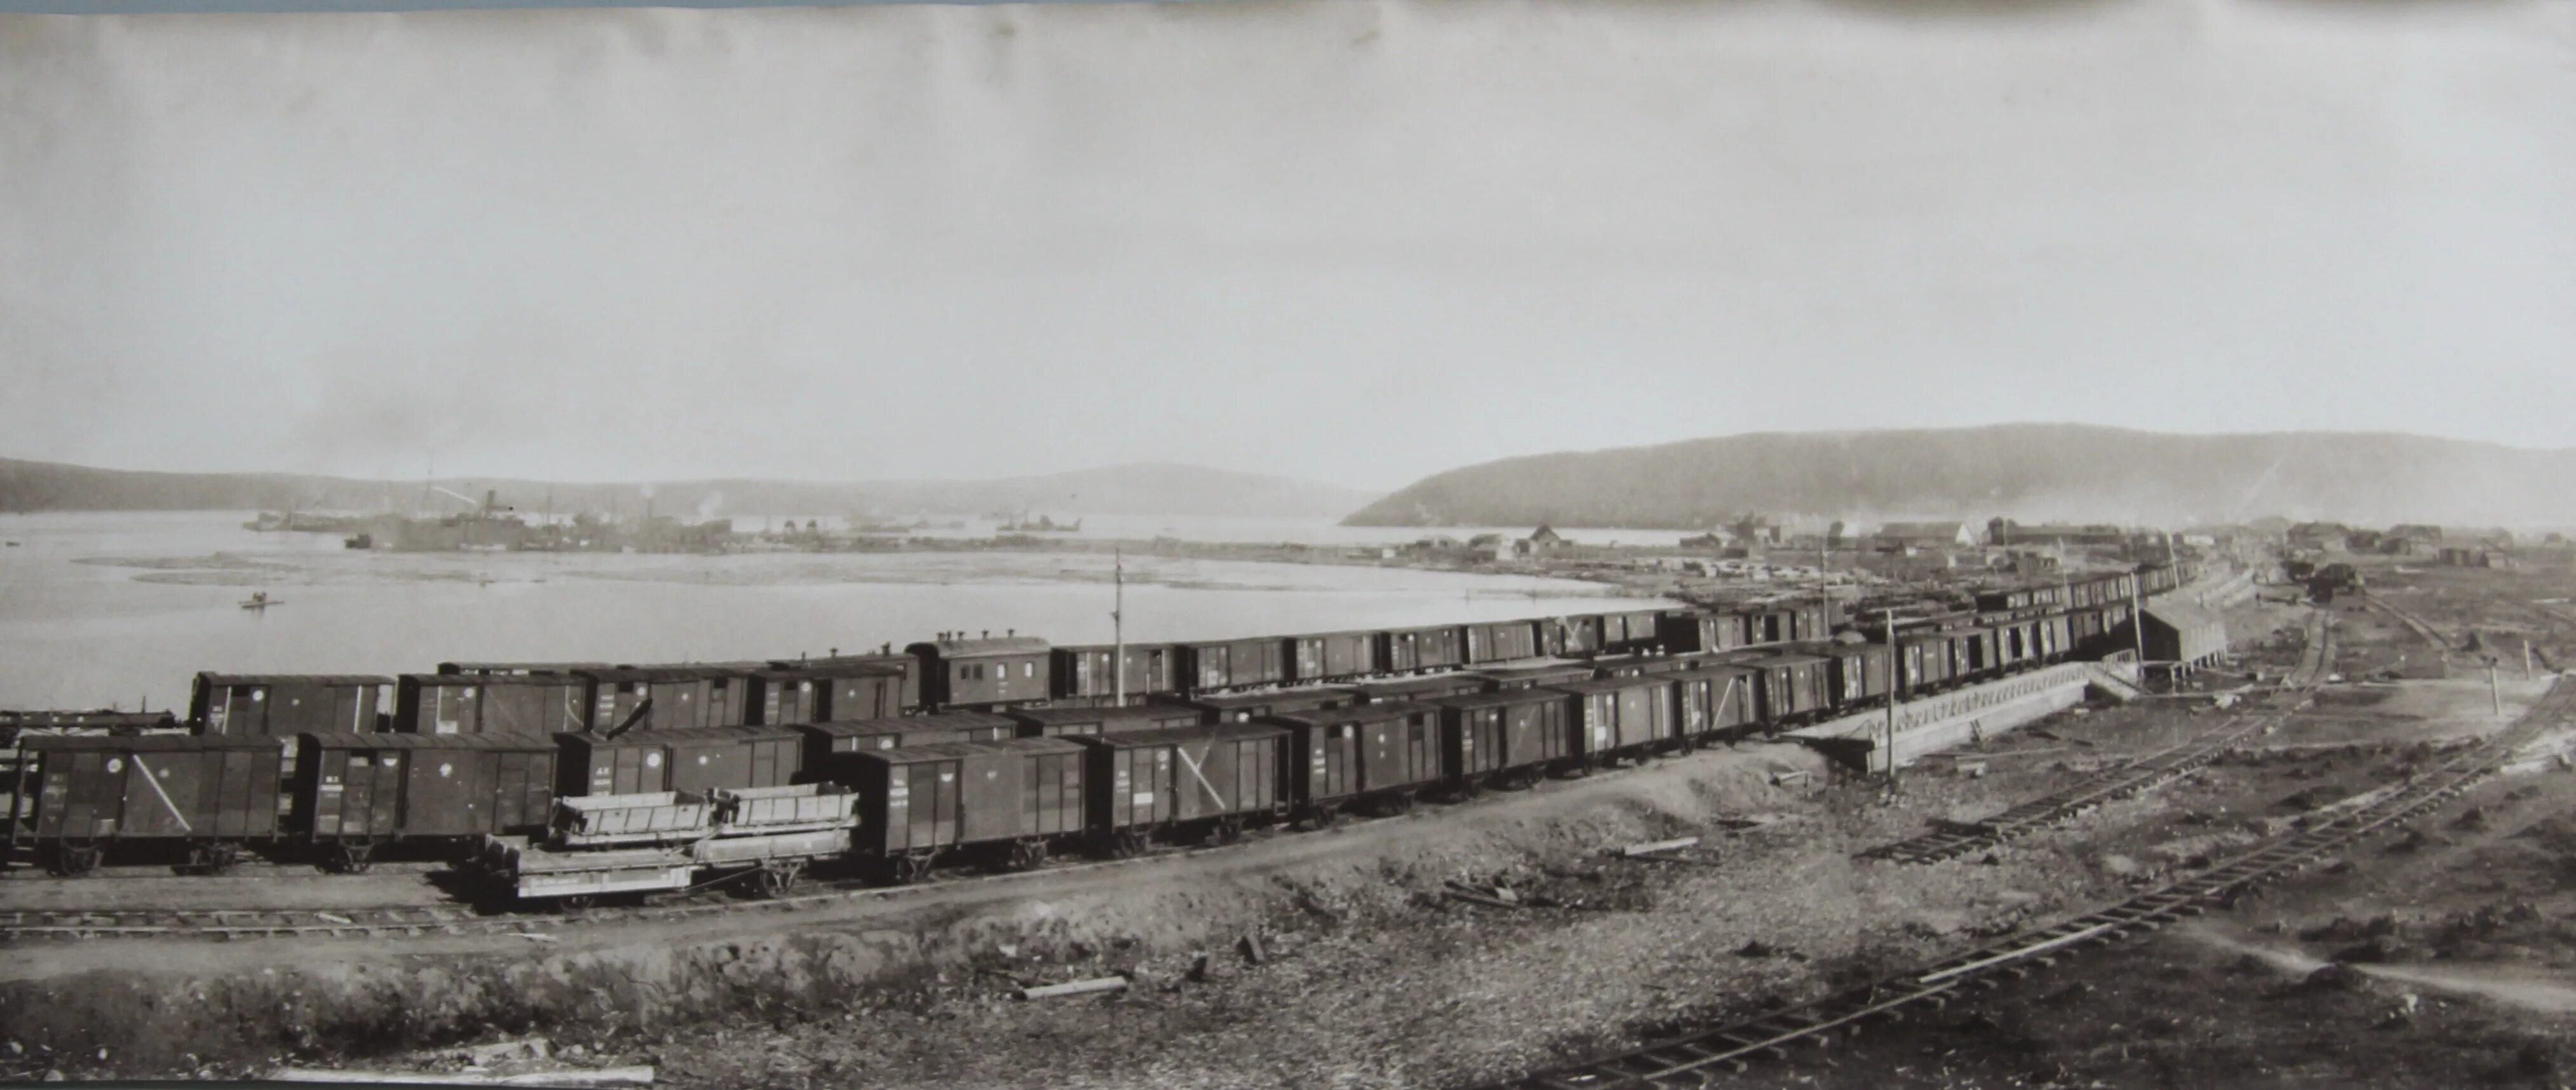 Мурманская железная дорога. Мурманская железная дорога 1916. Порт Мурманска 1916. Мурманск в 1916 году. Первый Мурманский вокзал 1916.